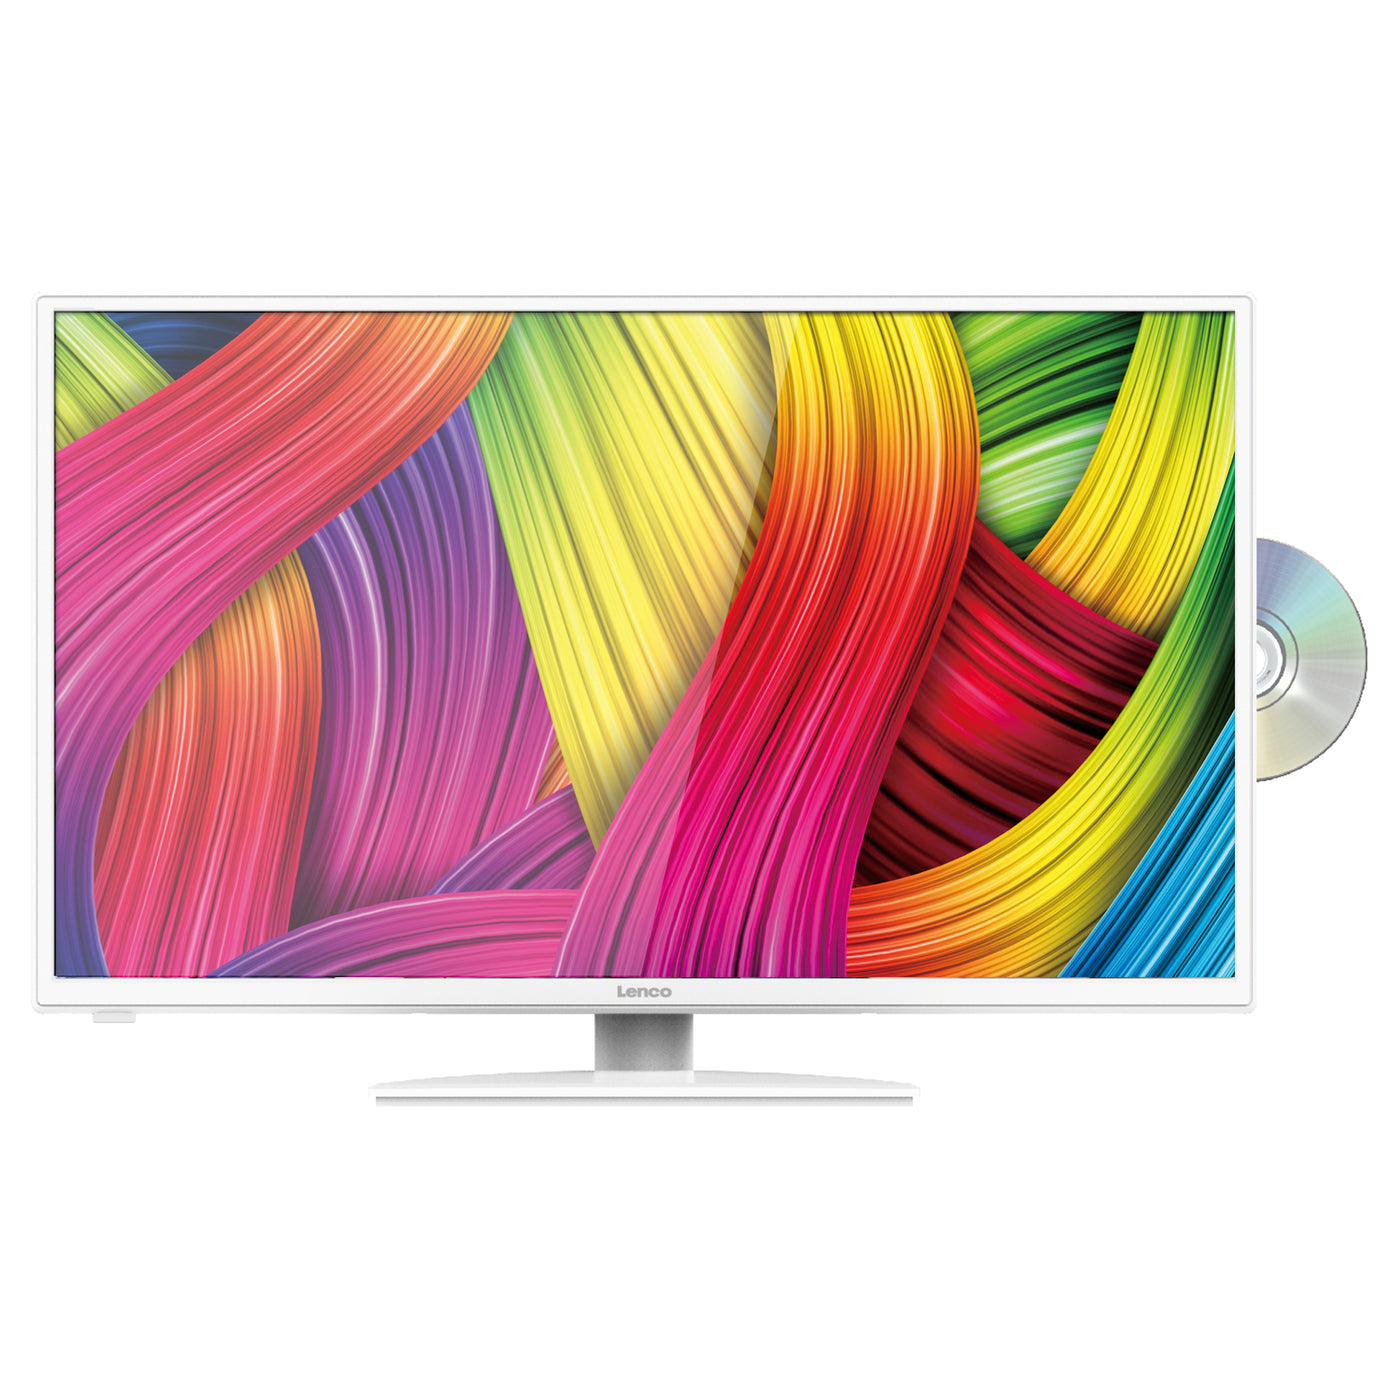 Lenco DVL-3242 - TV avec lecteur DVD intégré DVB/T/T2/S2/C 32 pouces - Blanc